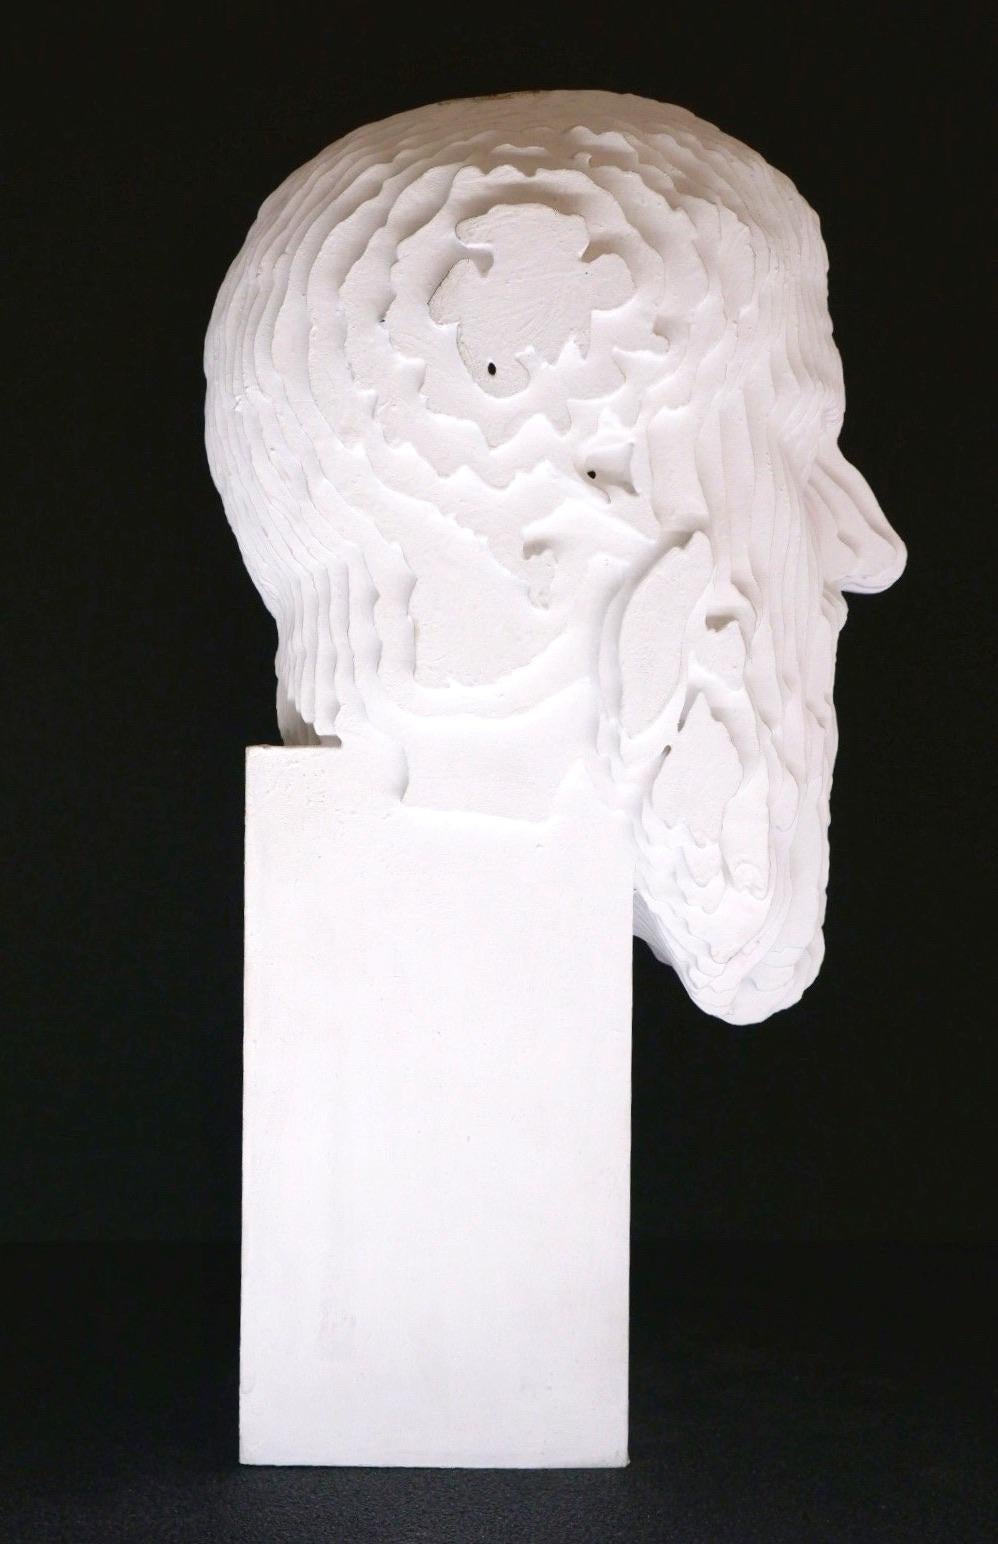 L'œuvre unique de Daniele Fortuna, Thologiny (Colormination), est réalisée avec la technique de la sculpture sur bois et est peinte à l'acrylique.
La sculpture Colormination fait partie d'une série réalisée par l'artiste et intitulée Thologiny.